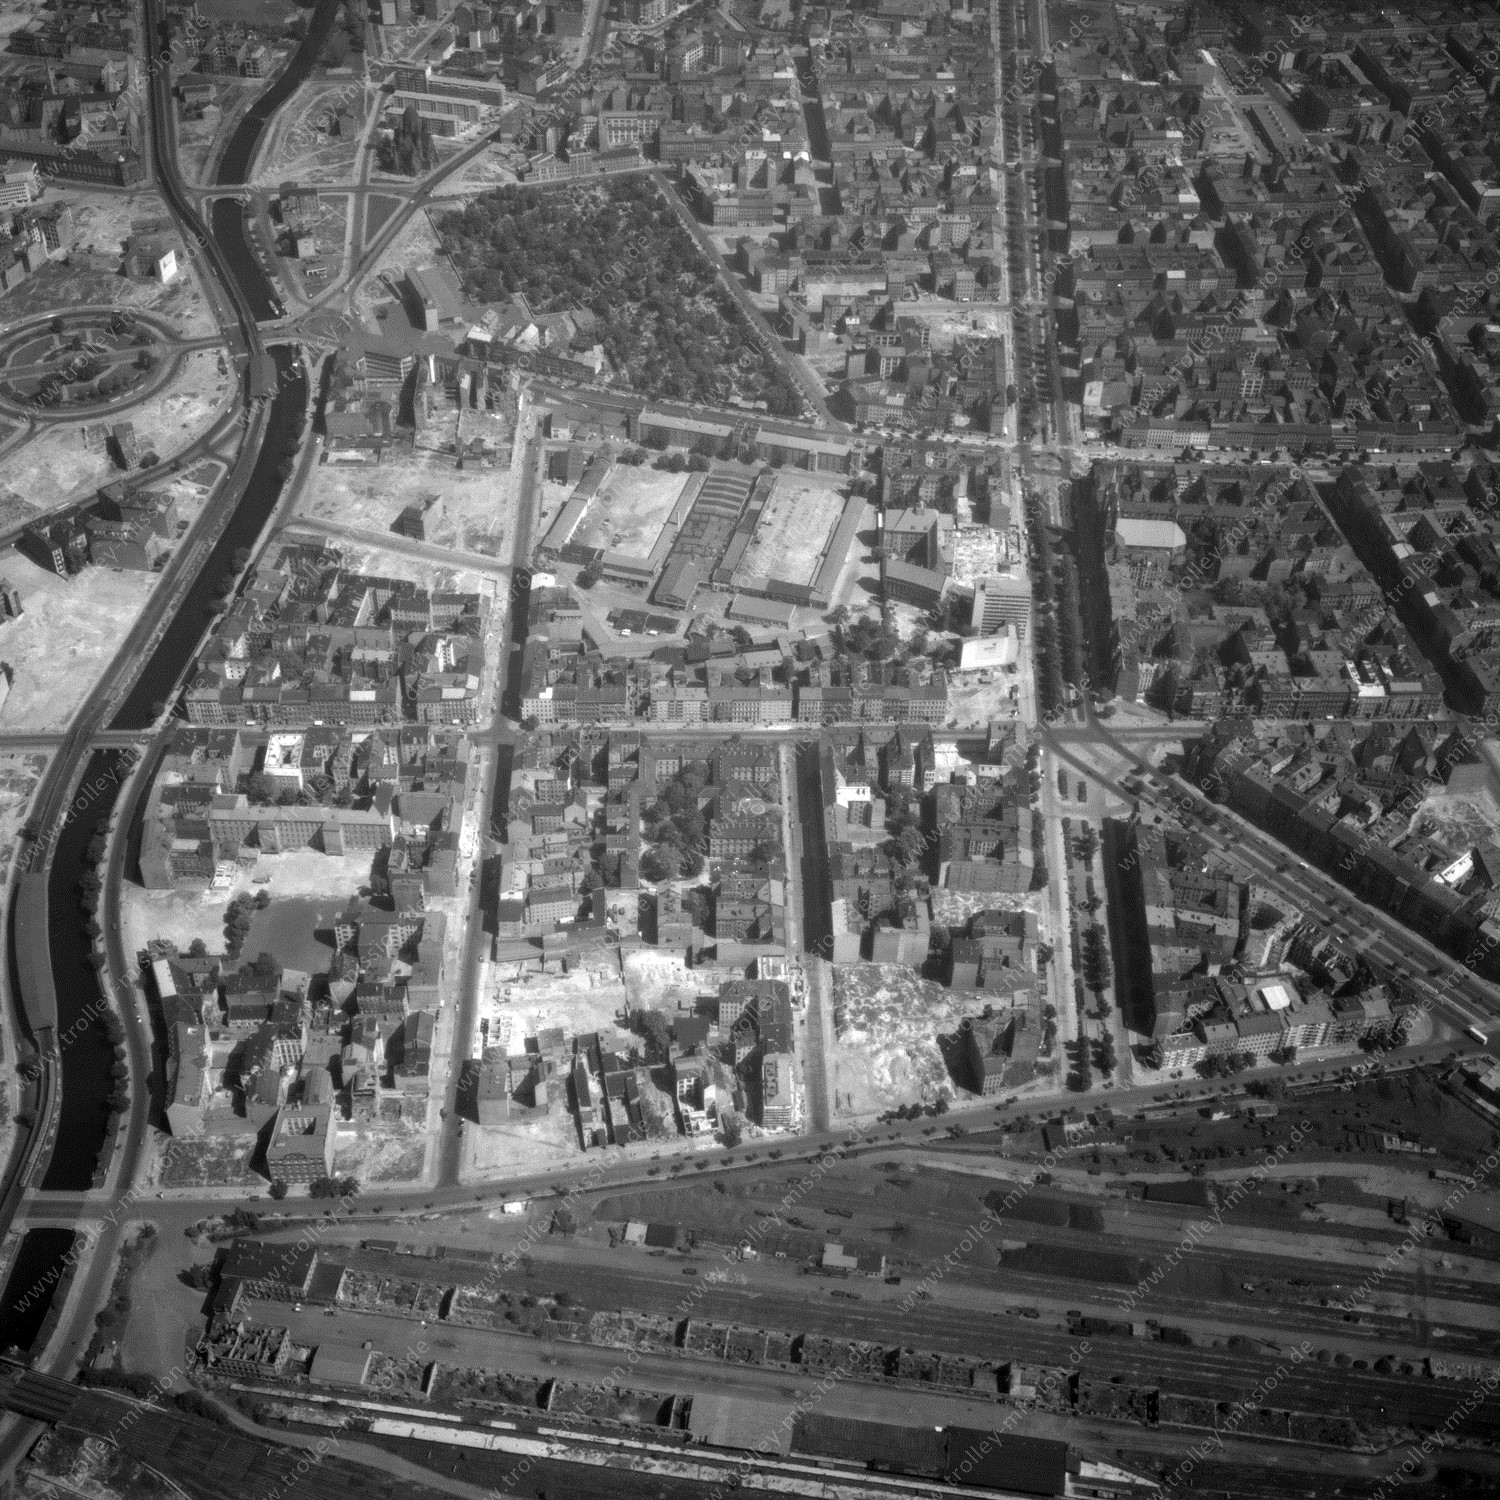 Alte Fotos und Luftbilder von Berlin - Luftbildaufnahme Nr. 05 - Historische Luftaufnahmen von West-Berlin aus dem Jahr 1954 - Flugstrecke India